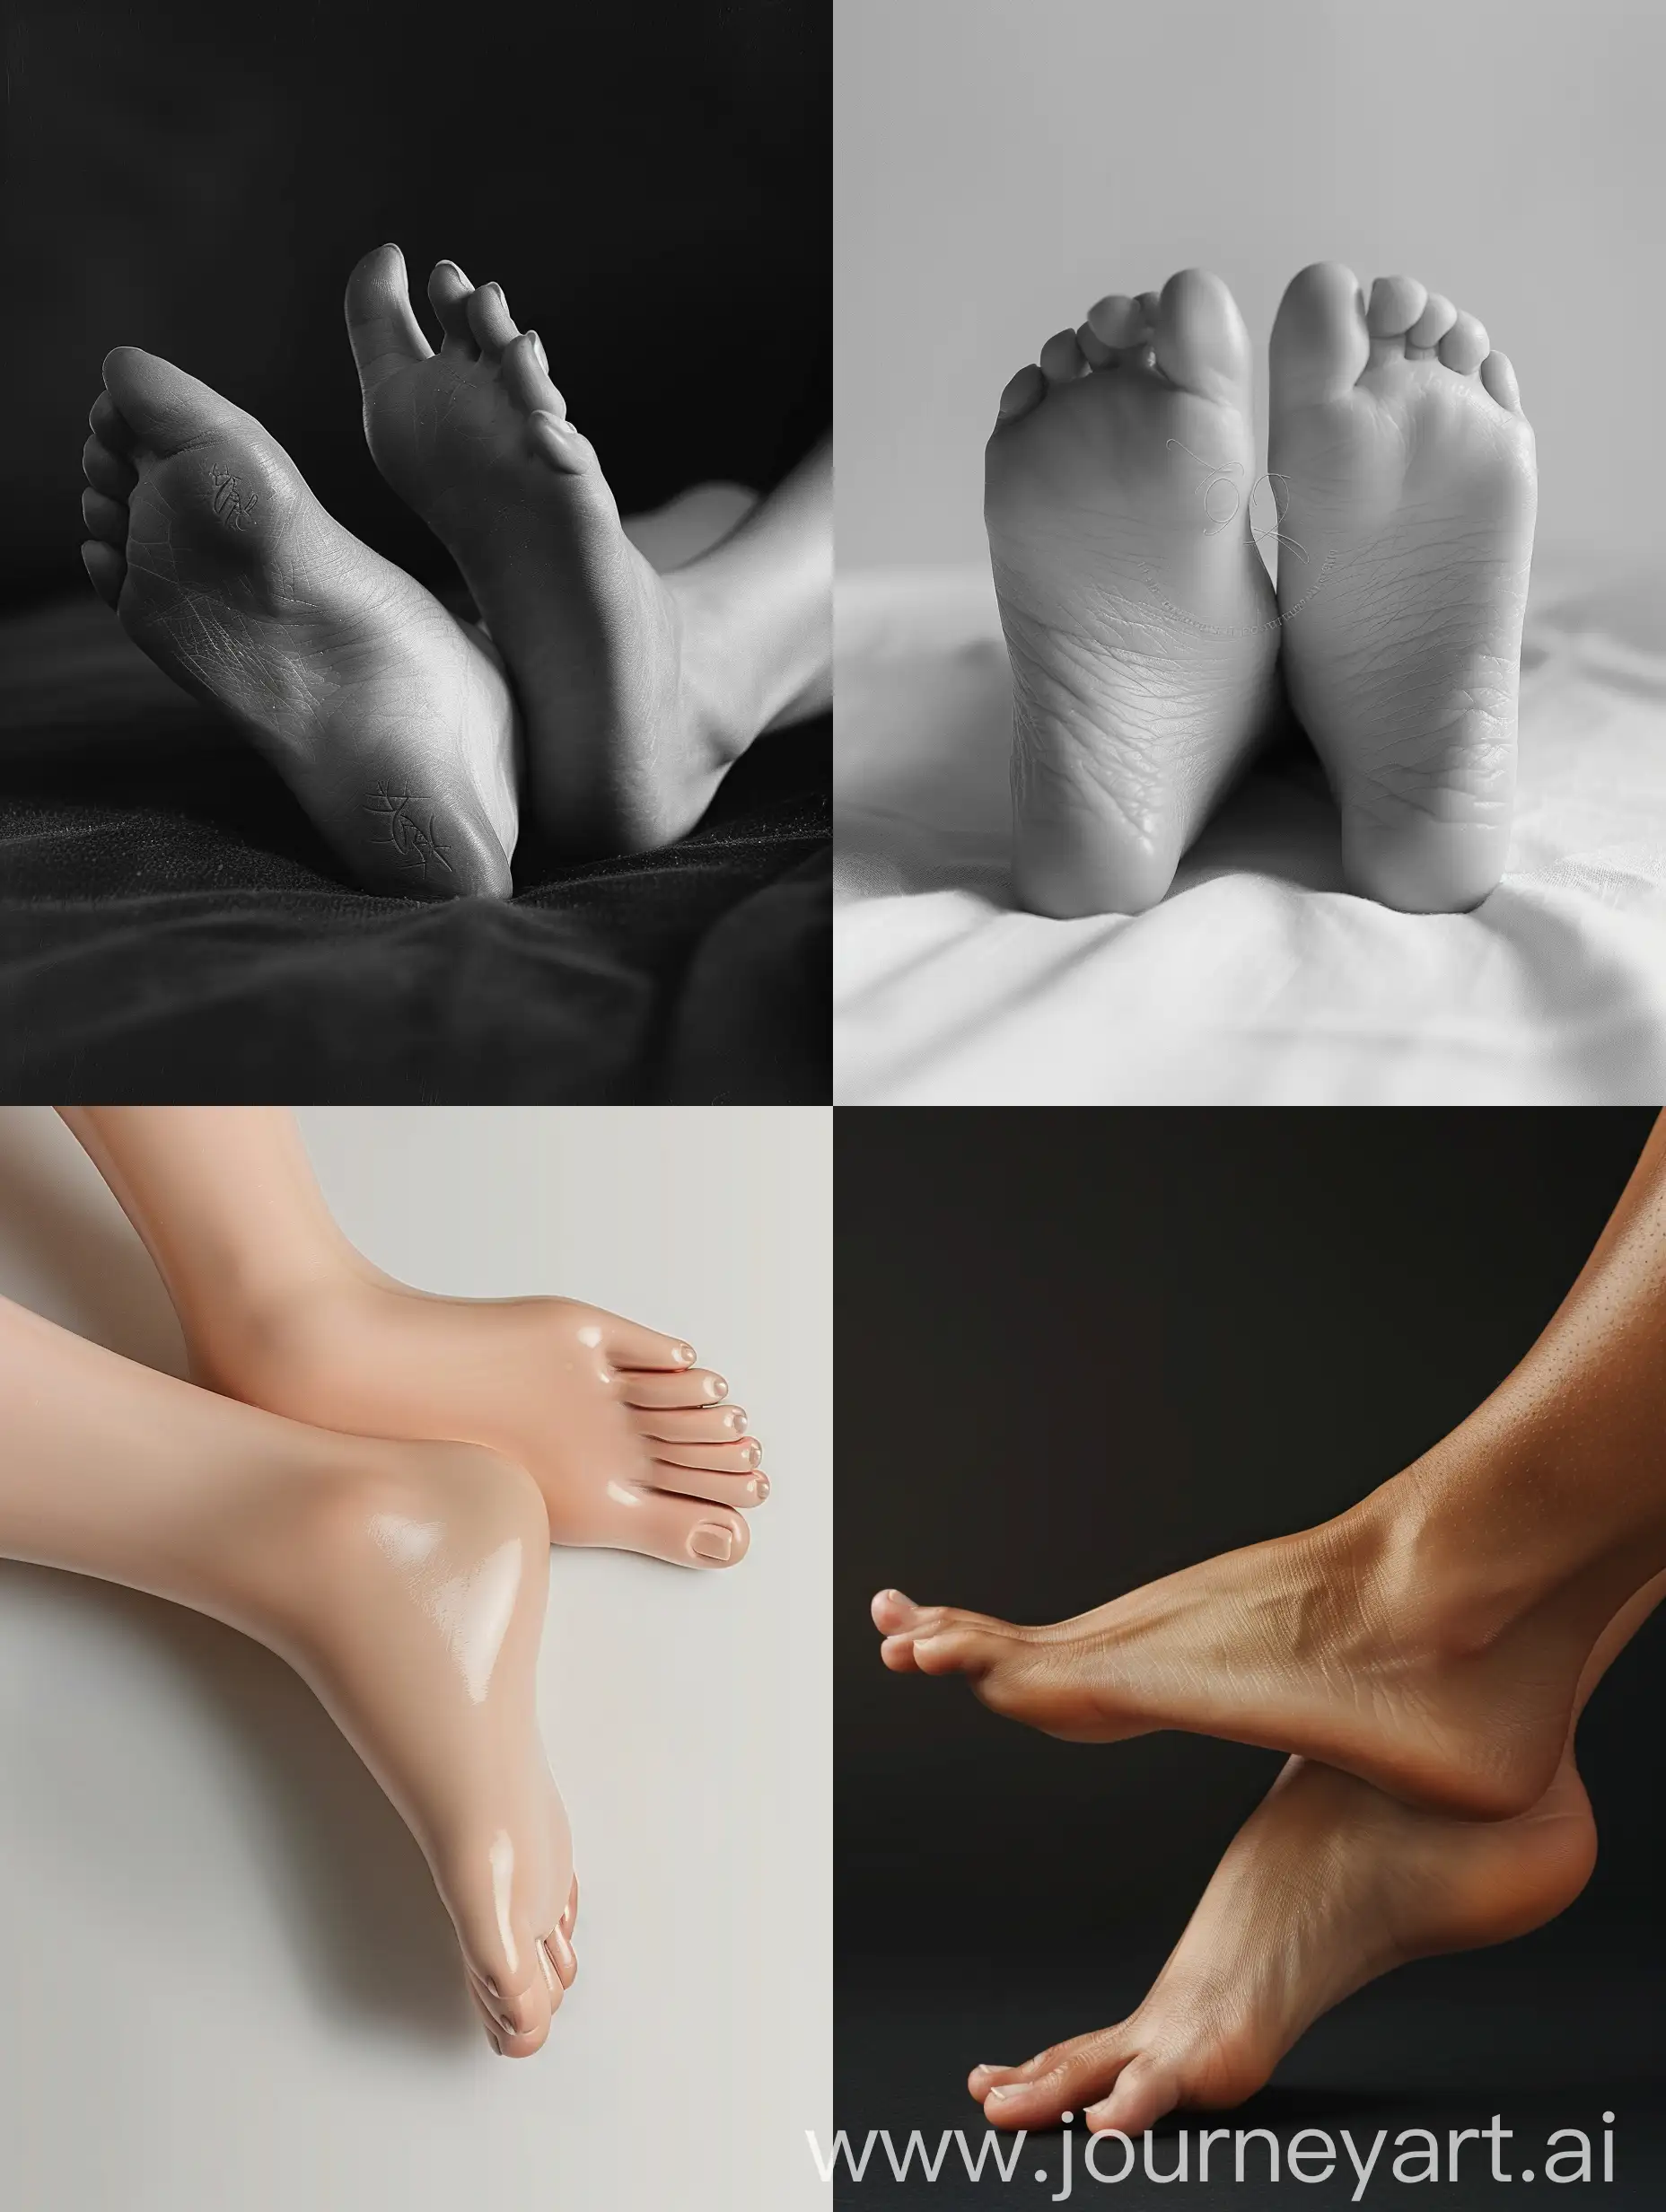 Красивые утонченные женские ноги (ступни) крупным планом. Реалистичное изображение 